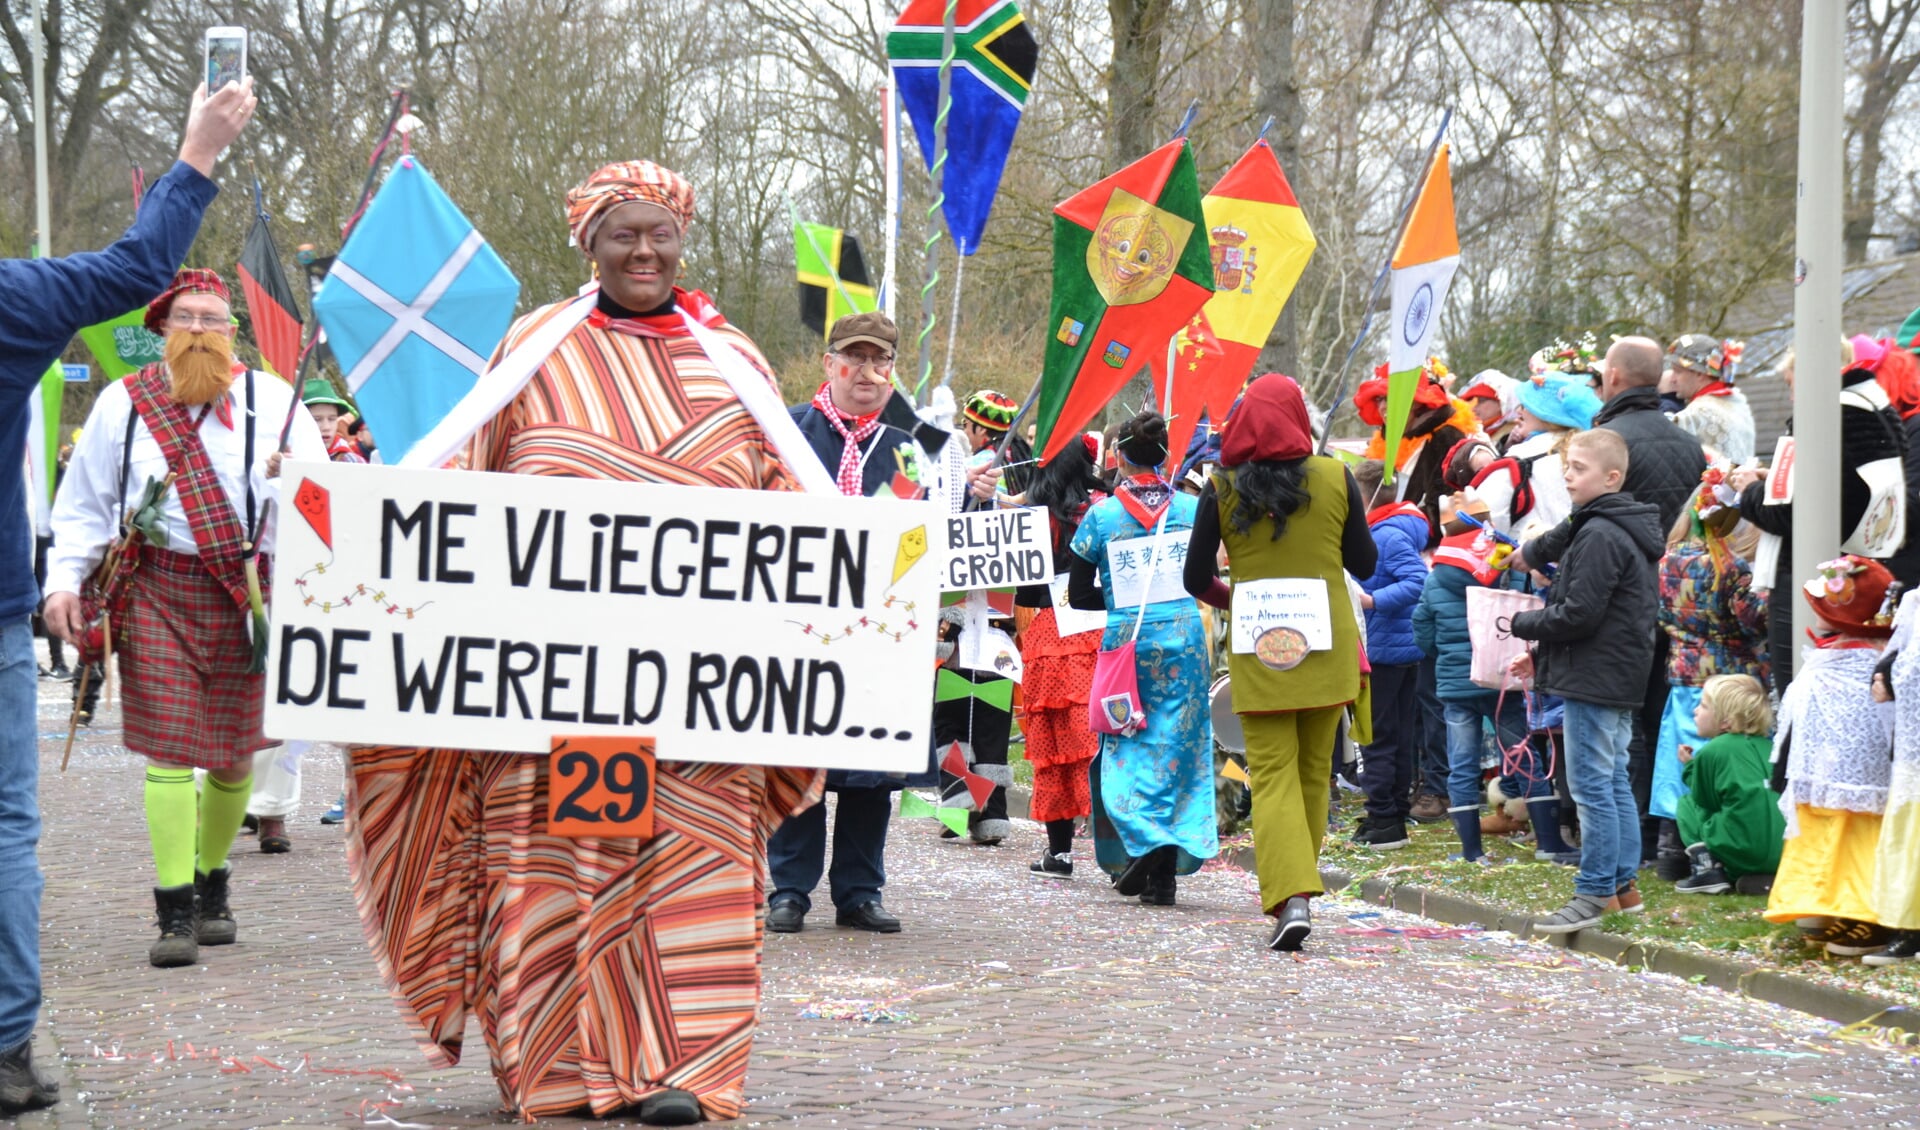 De carnavalsoptocht in Halsteren is toch een evenement van formaat dat op de kalender van de gemeente thuishoort.